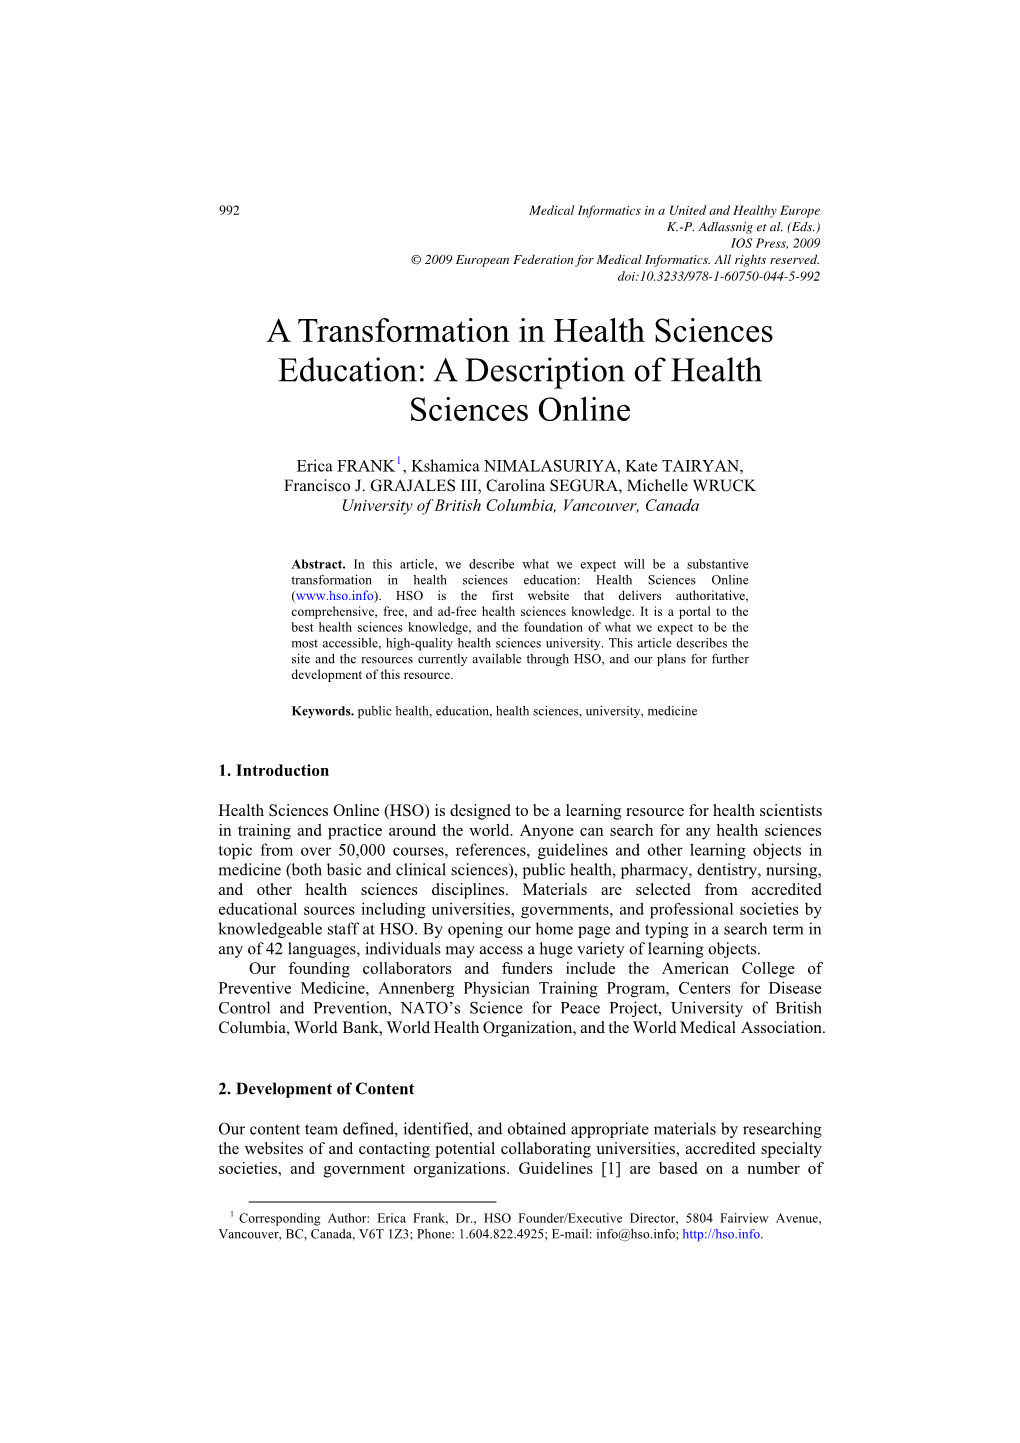 A Transformation in Health Sciences Education: a Description of Health Sciences Online